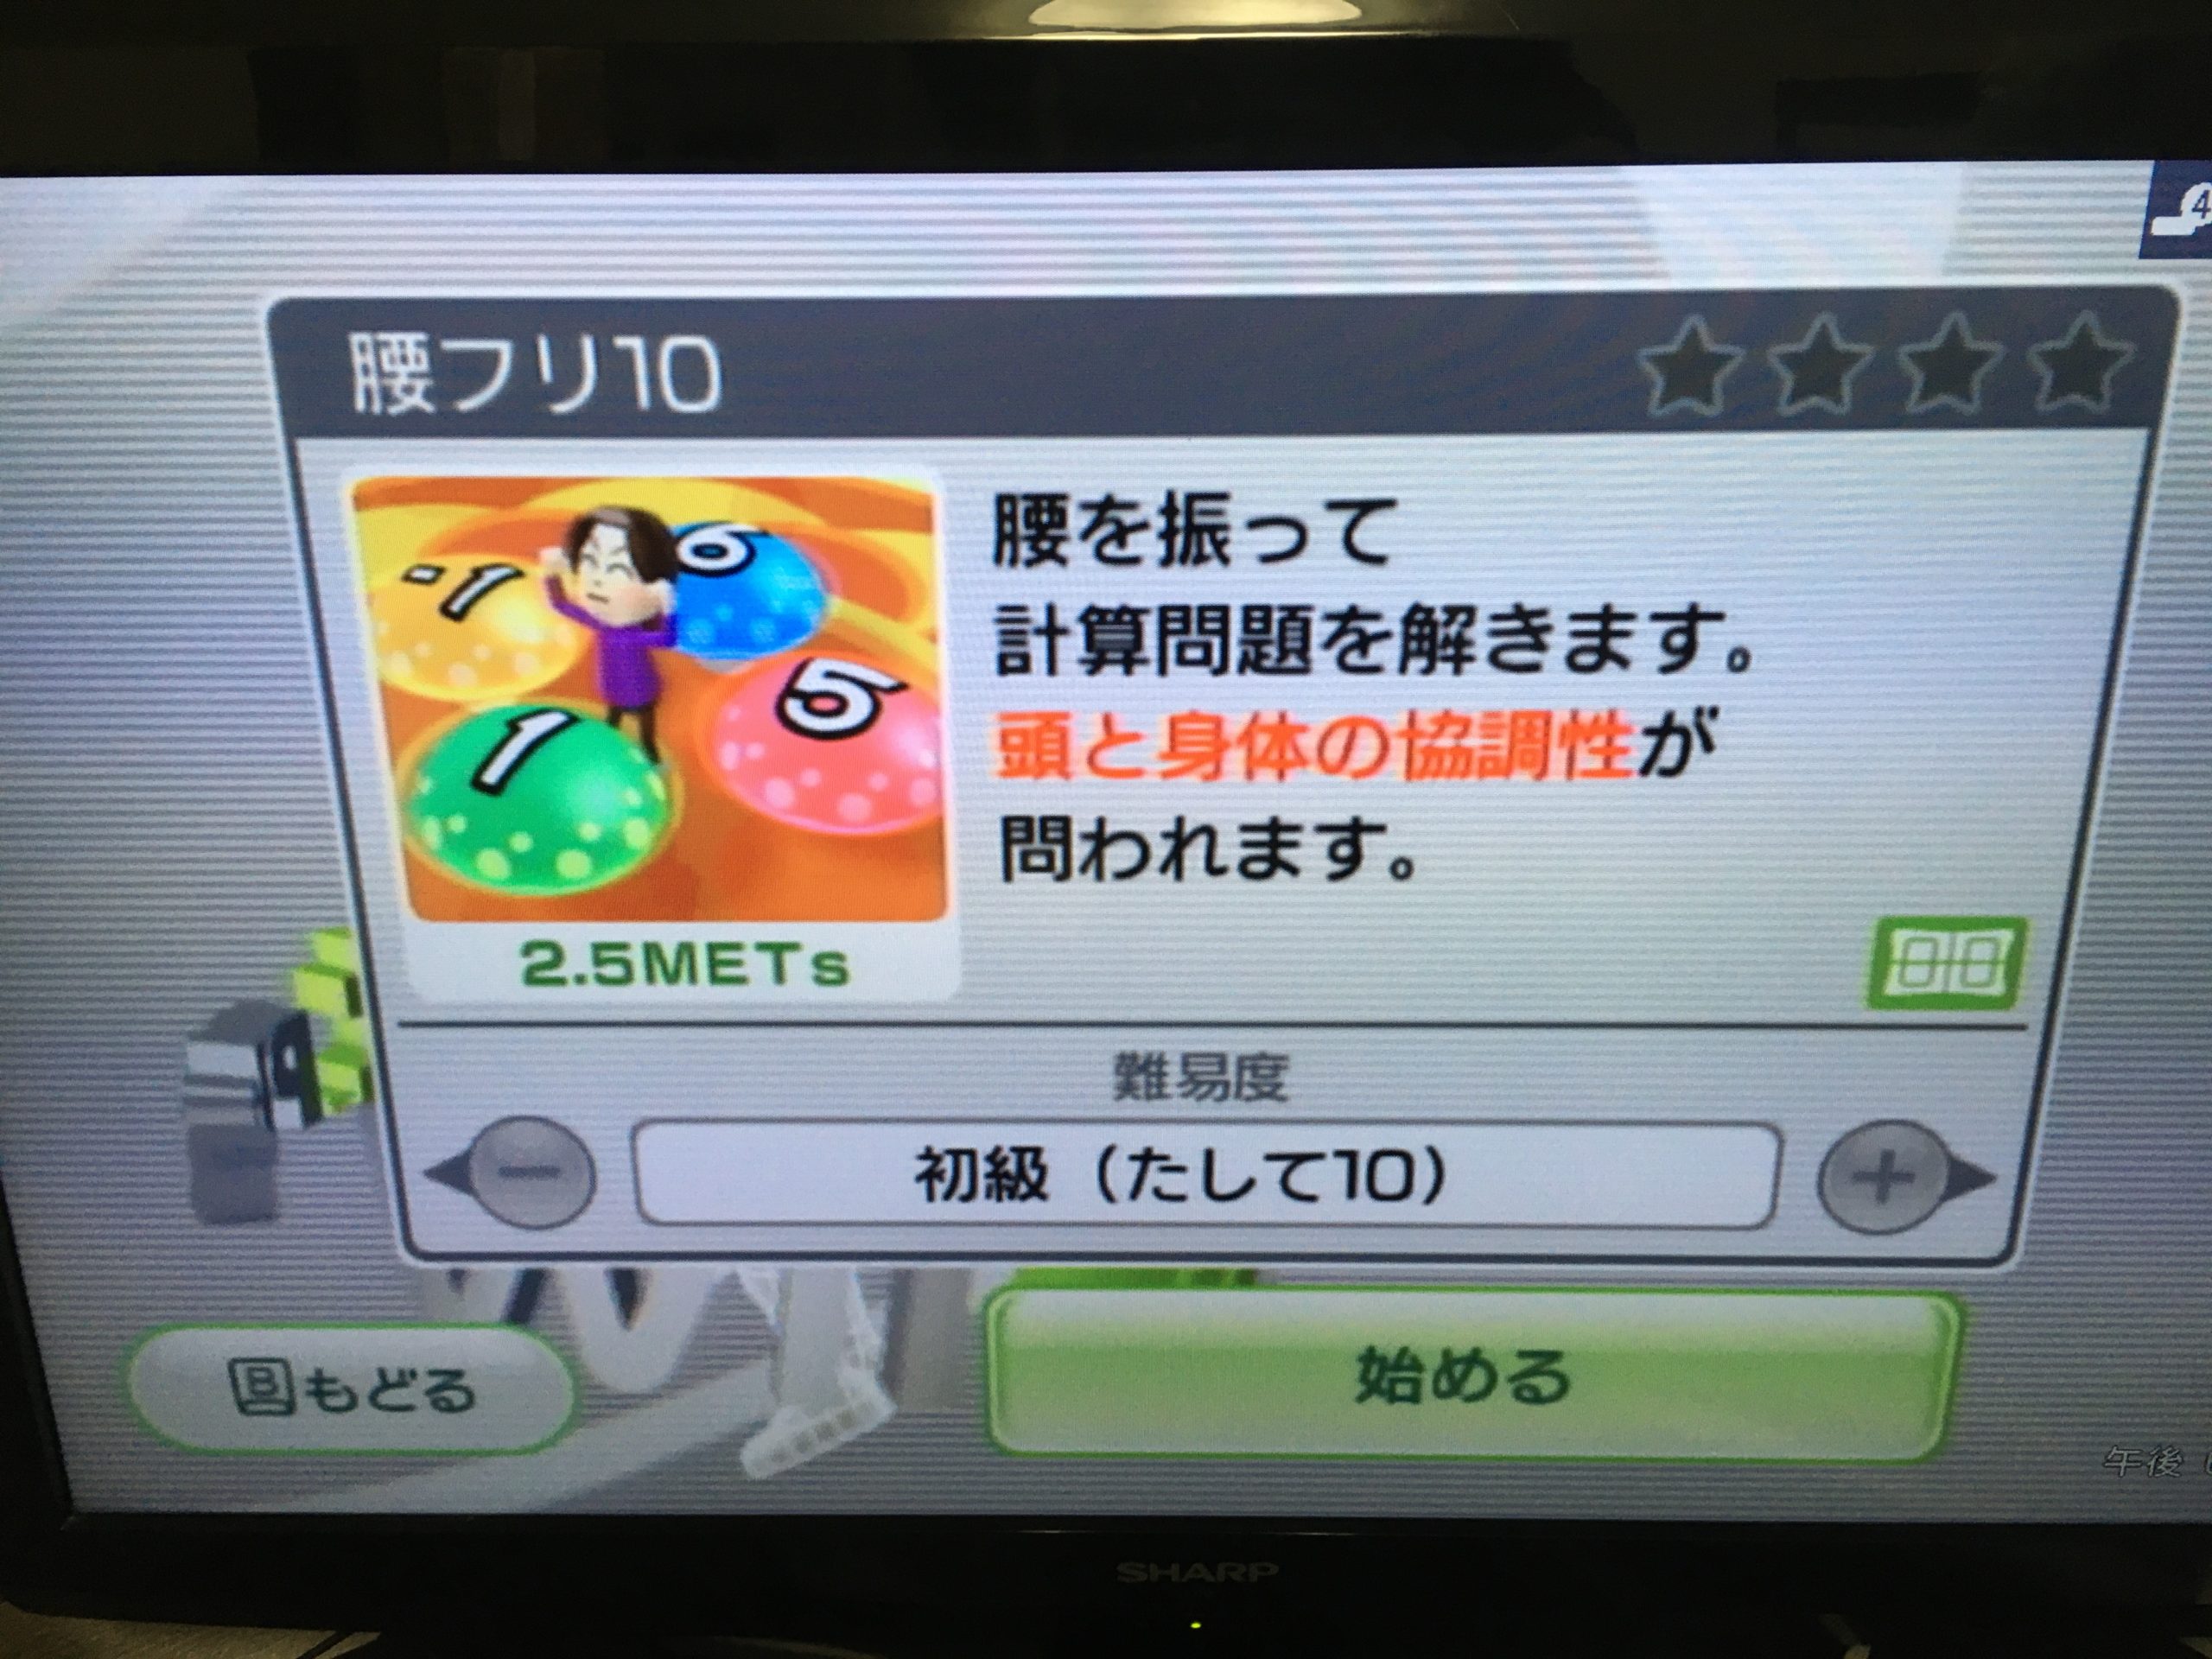 Wii Fit Plus（ウィーフィット）でできる事・バランスWiiボードの紹介 れとろとろ ゲームブログ